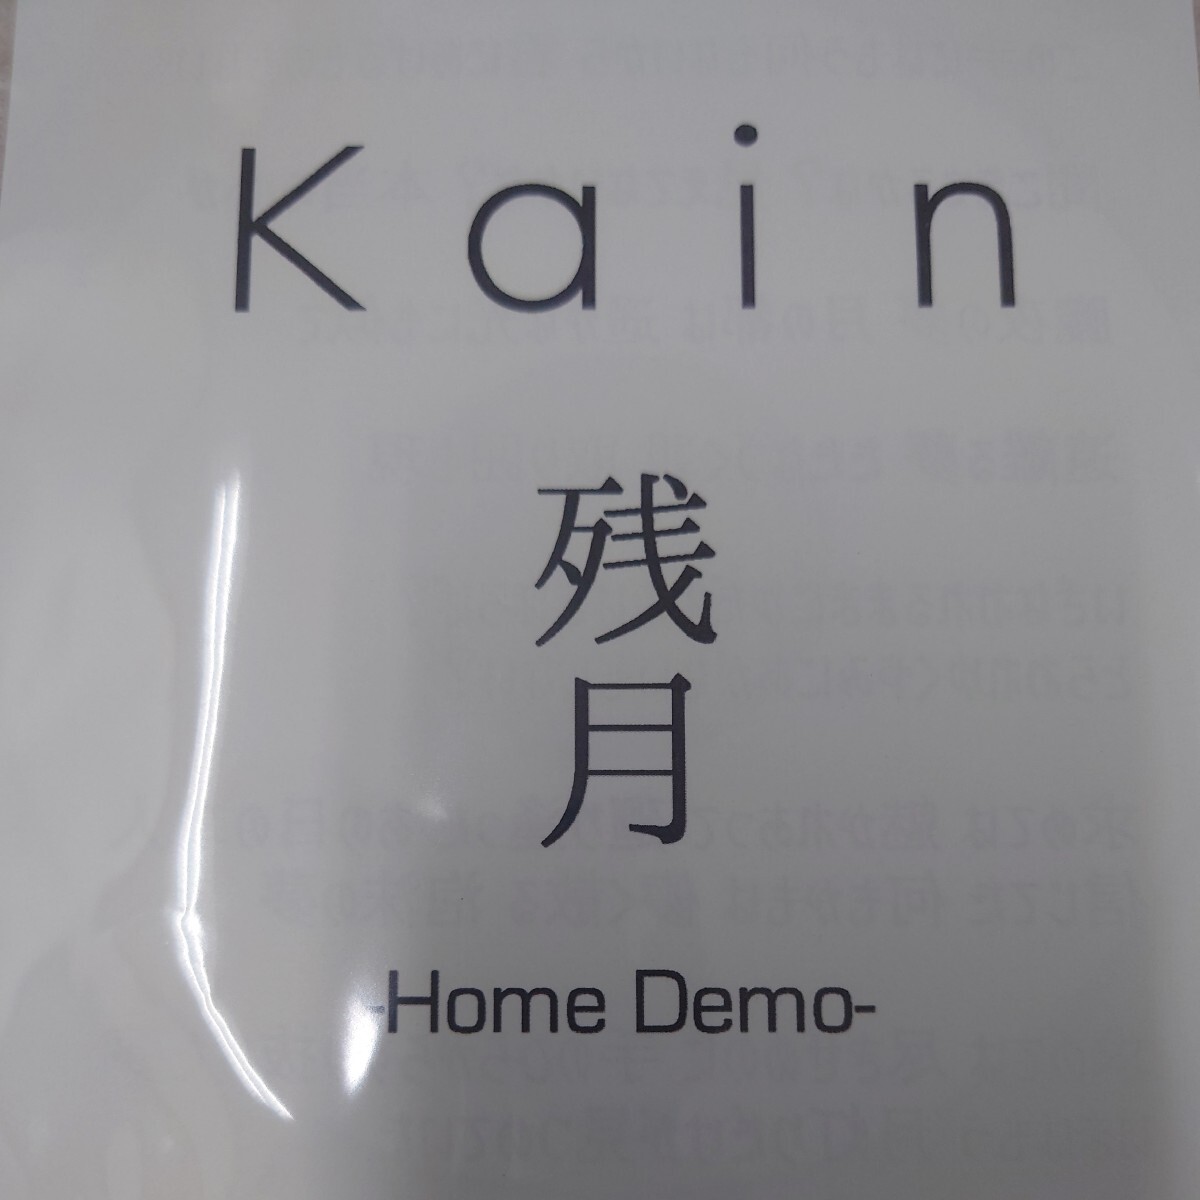 Kαin осталось месяц Home Demo ограничение распространение CD-R не departure таблица demo источник звука 